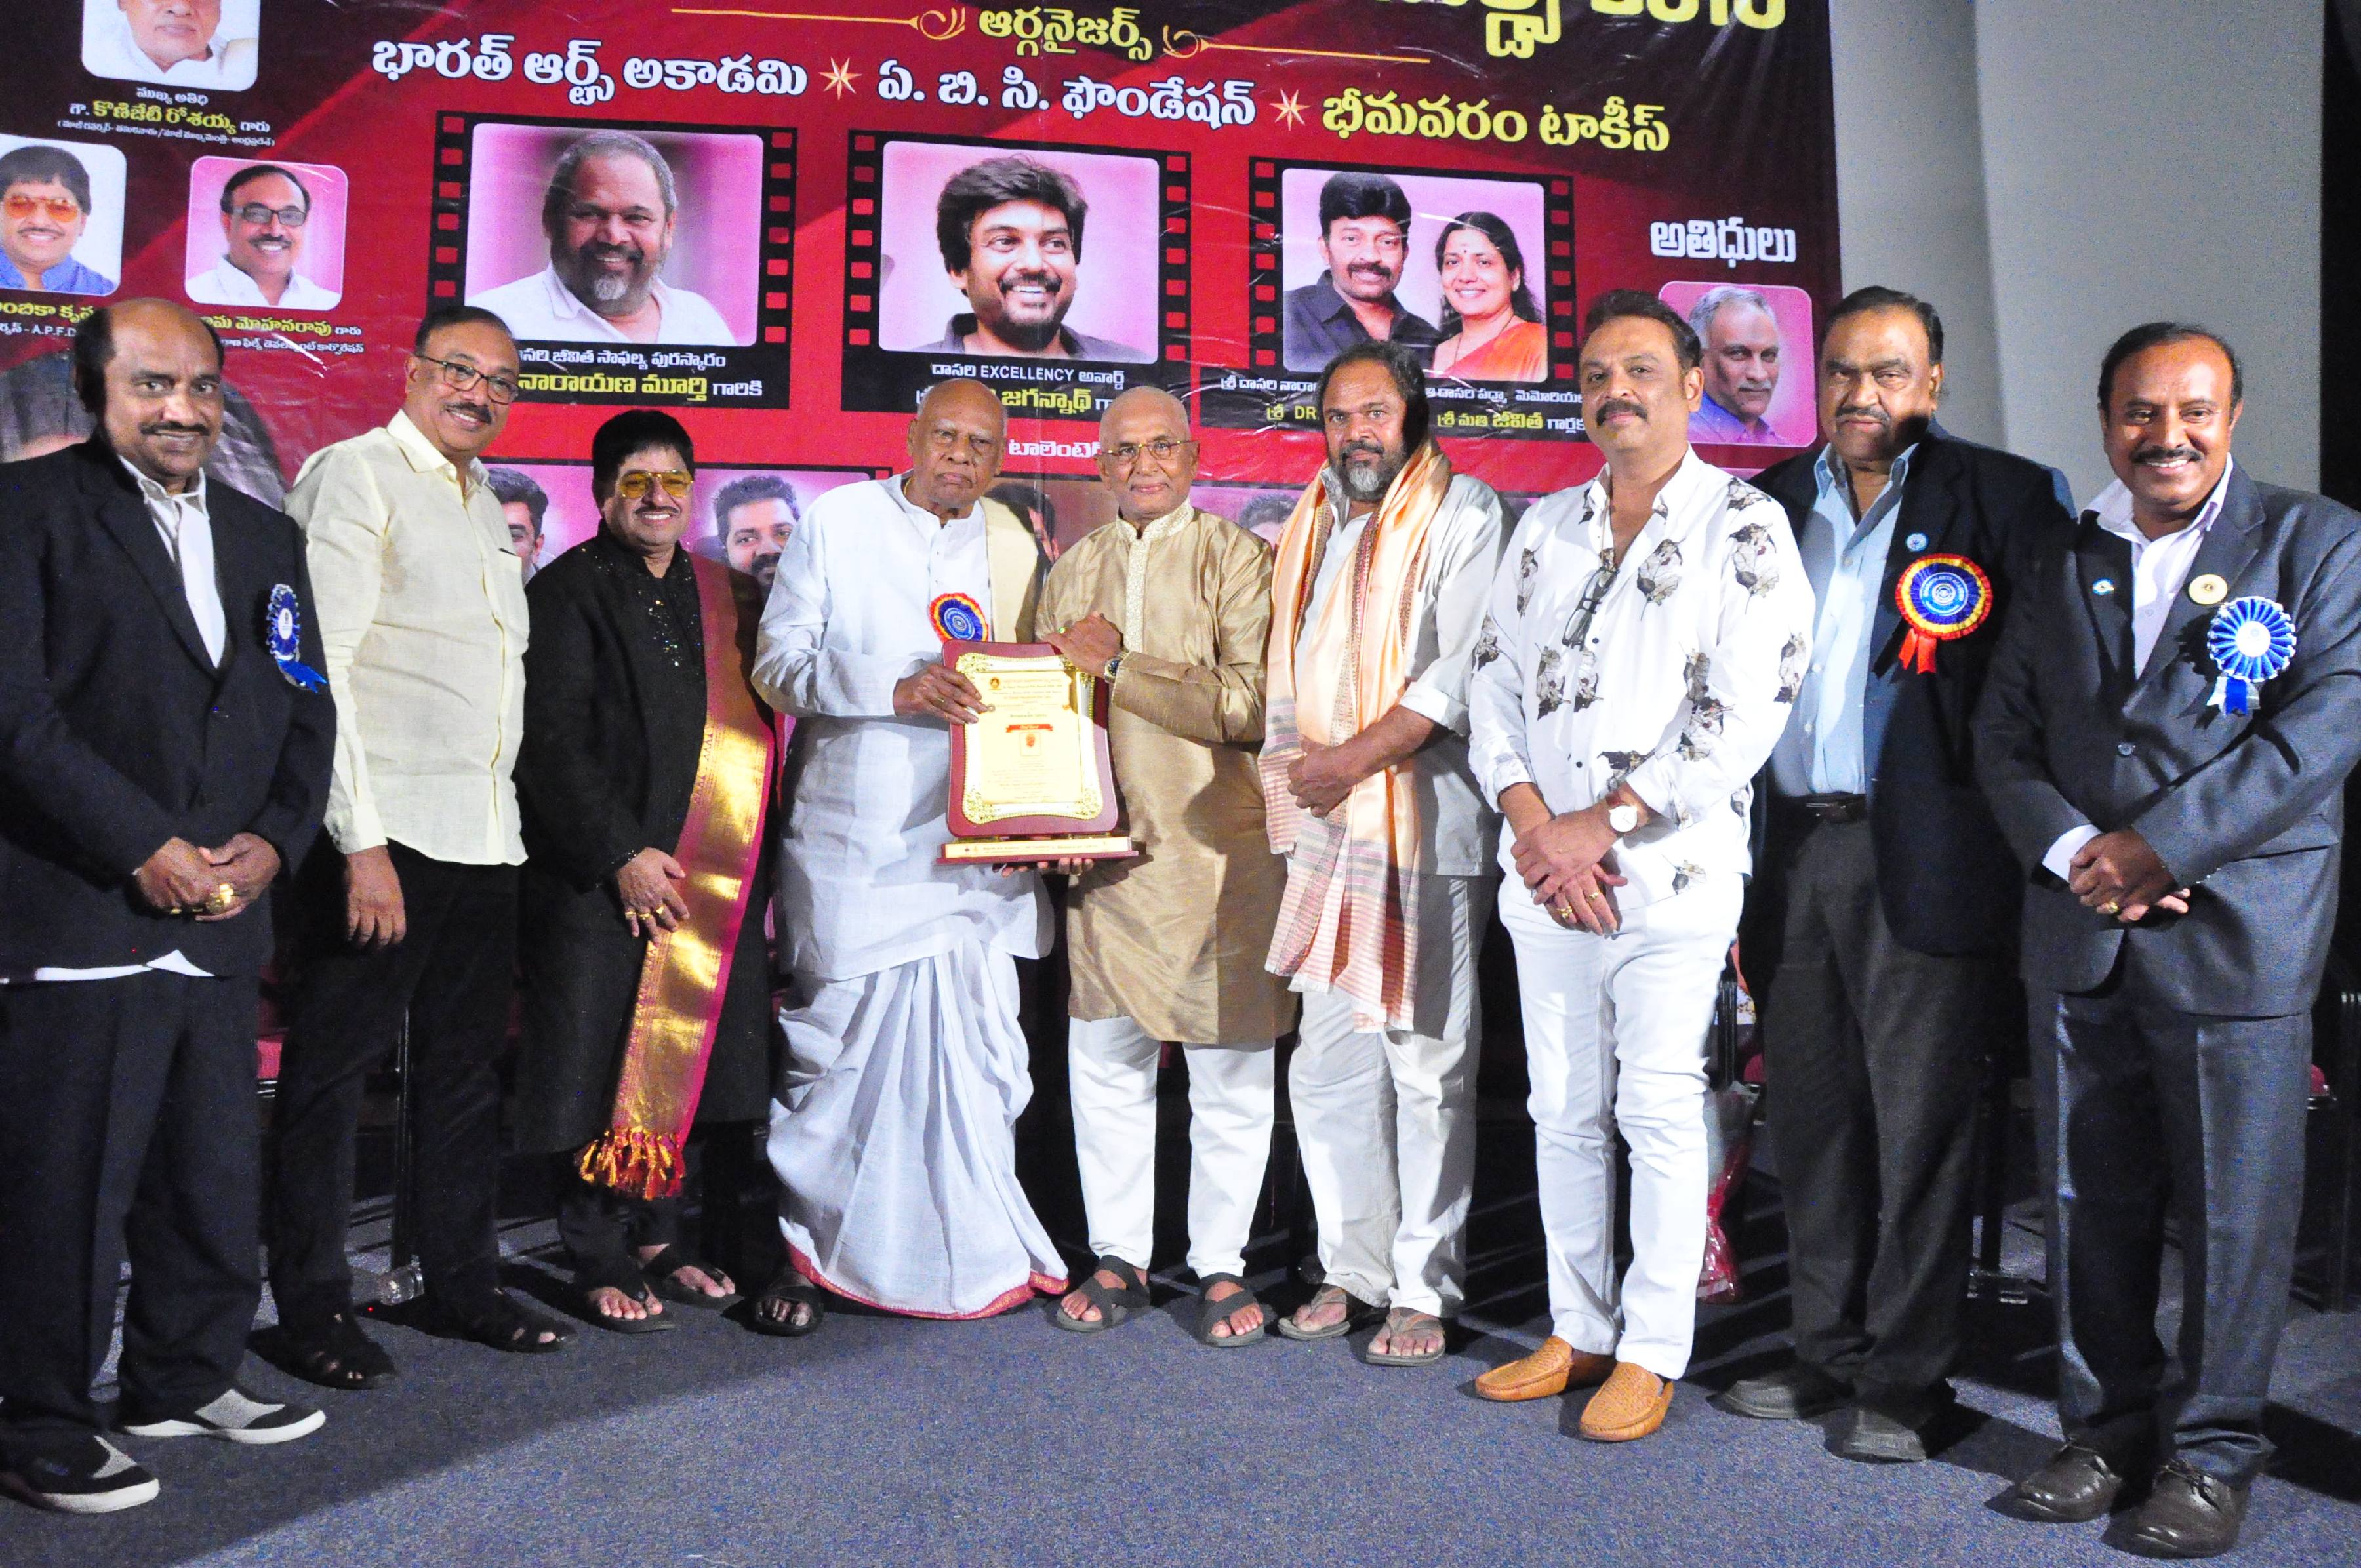 Dasari Film Awards Function matter and photos